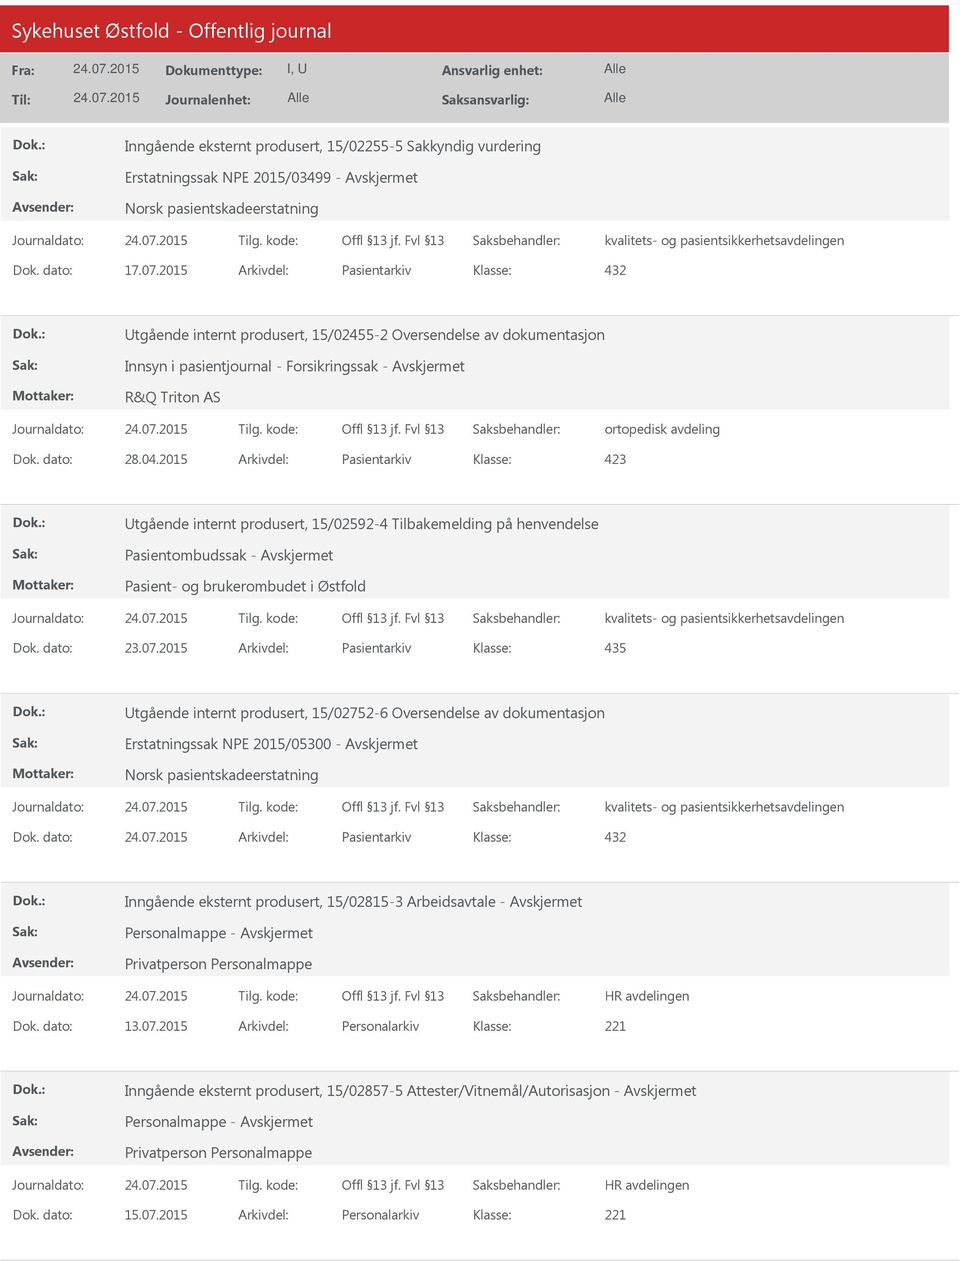 2015 Arkivdel: Pasientarkiv 423 tgående internt produsert, 15/02592-4 Tilbakemelding på henvendelse Pasientombudssak - Pasient- og brukerombudet i Østfold Dok. dato: 23.07.